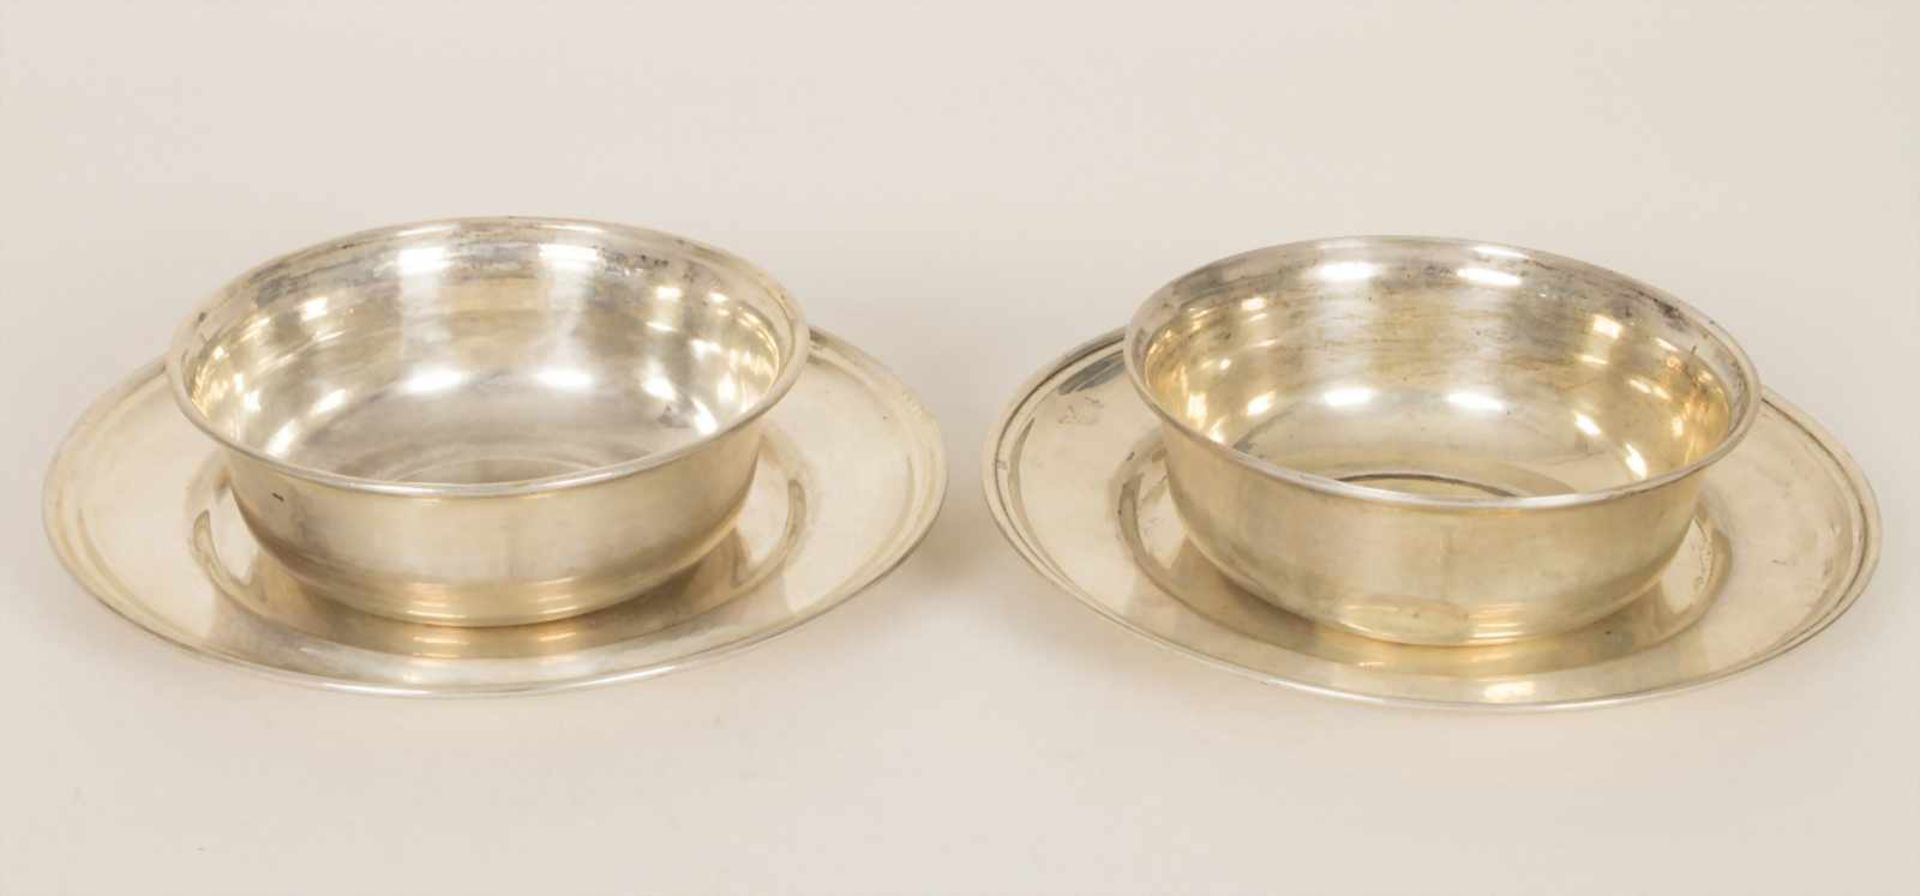 Paar Schüsseln mit Unterteller / A pair of silver bowls with saucersMaterial: Silber 800,